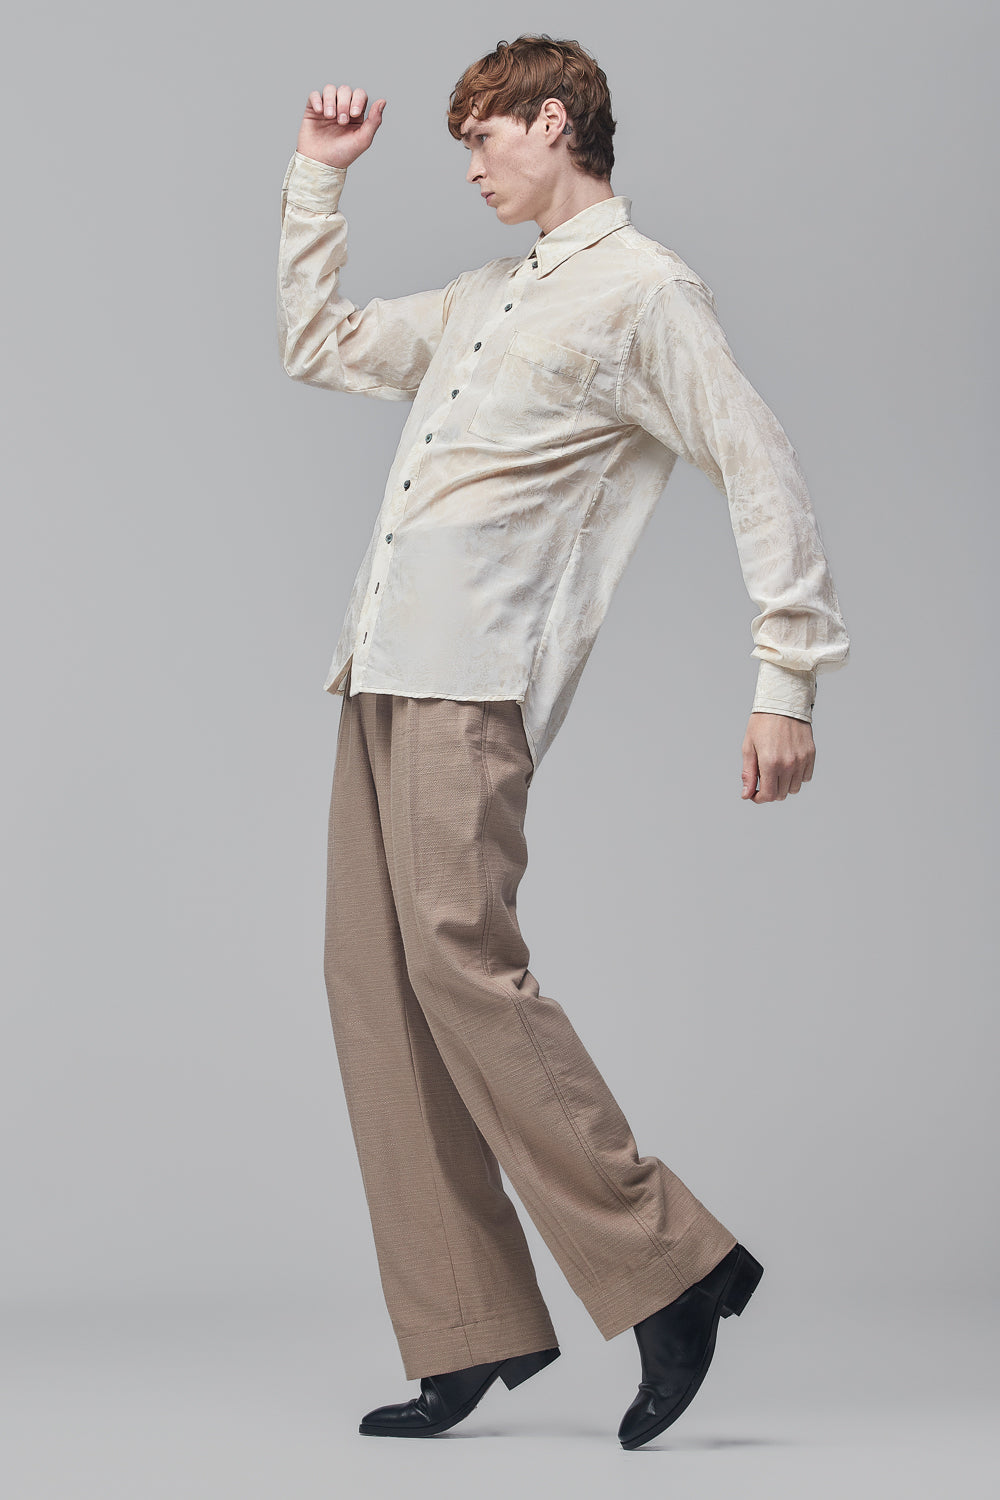 Camisa de Mangas Longas em Crepe de Seda Off-White com Estampa em Relevo de Flores Amarelo-Nápoles